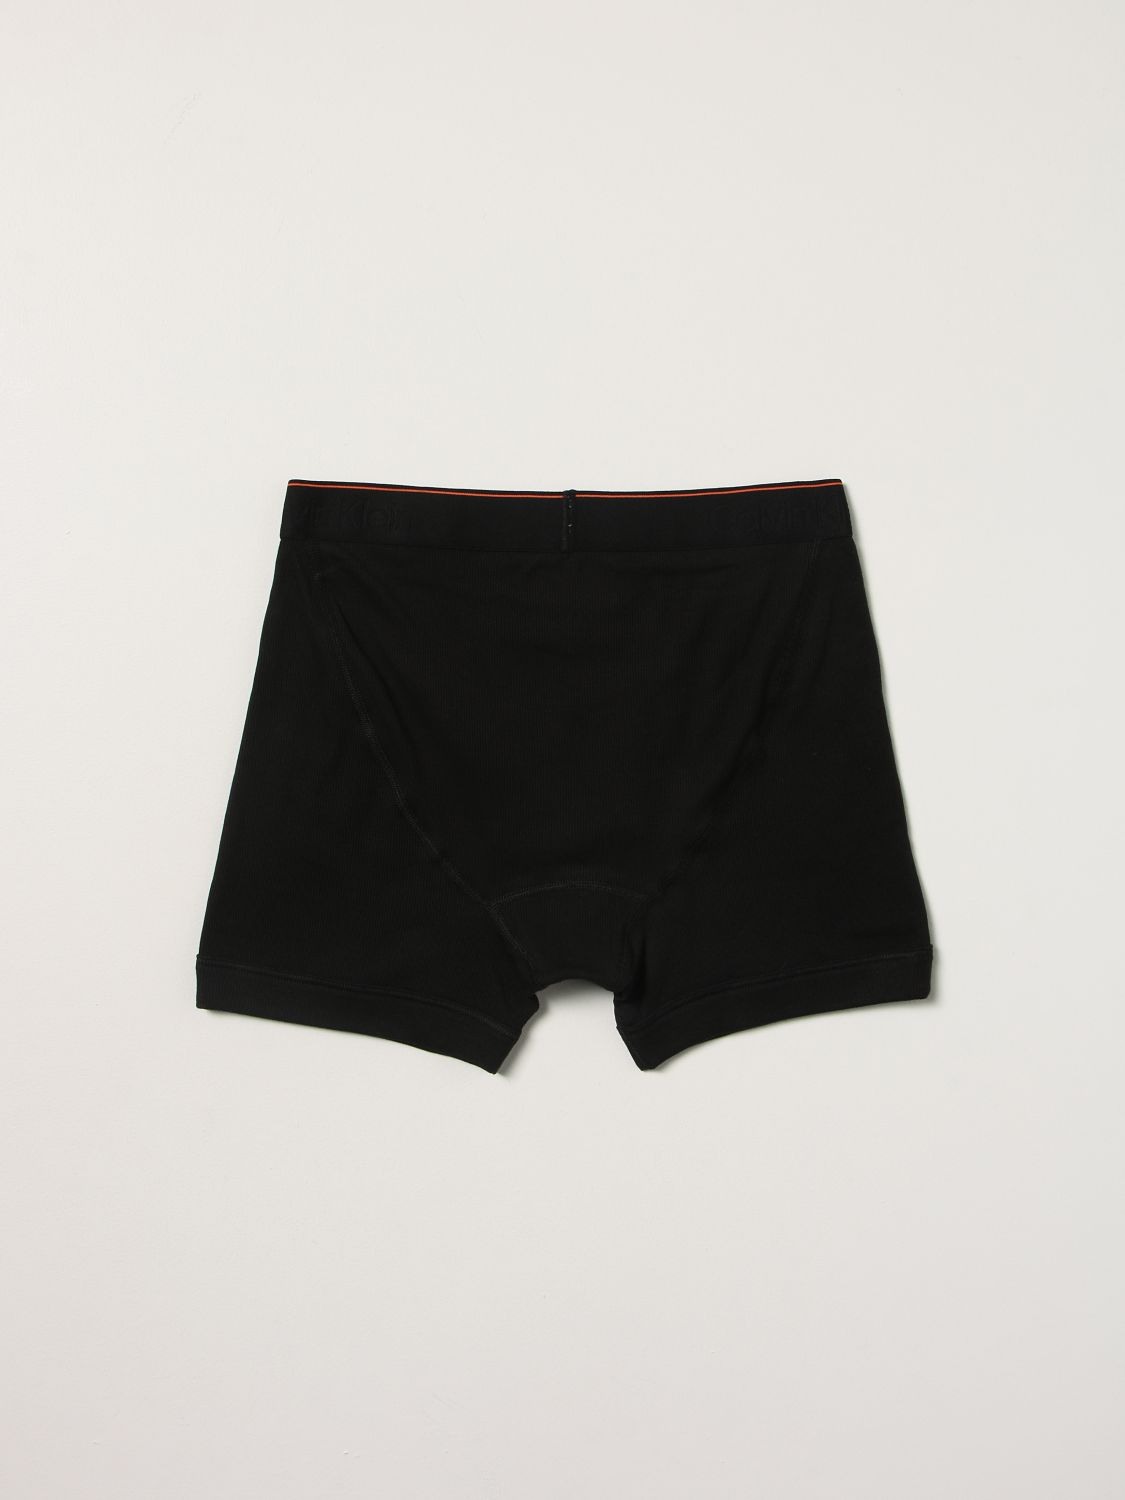 Underwear Heron Preston For Calvin Klein: Set 3 boxers Orange 2.0 Heron Preston x Calvin Klein with logo black 3